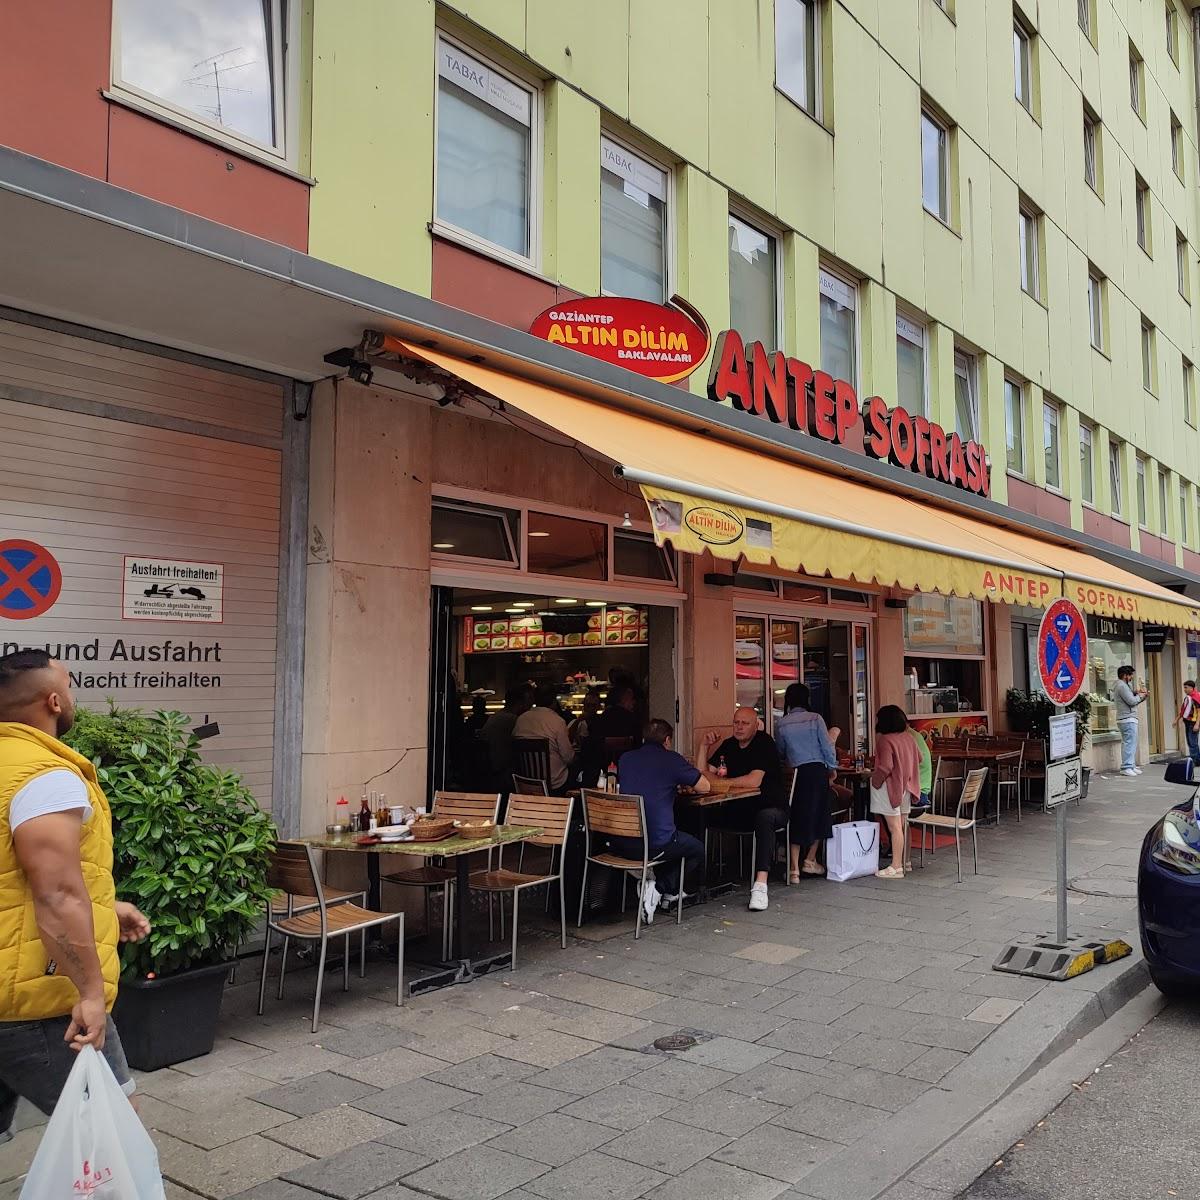 Restaurant "Alt-n Dilim" in München